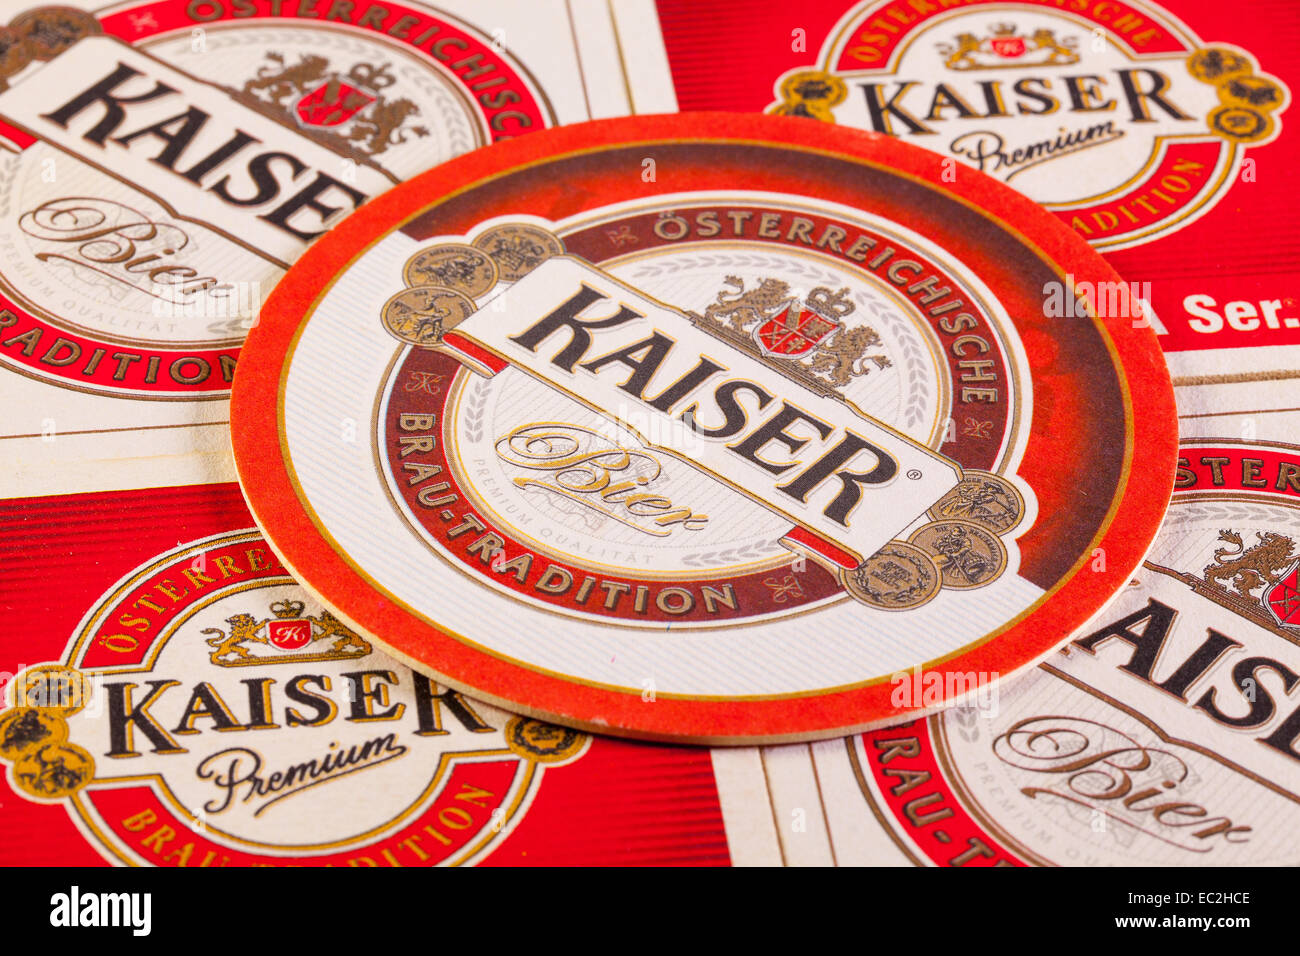 Österreich, LINZ-Juli 7,2014: Kaiser Beer ist das beliebteste Bier gebraut in Linz. Die Biermarke hat eine lange Geschichte und vorhanden ist Sünde Stockfoto